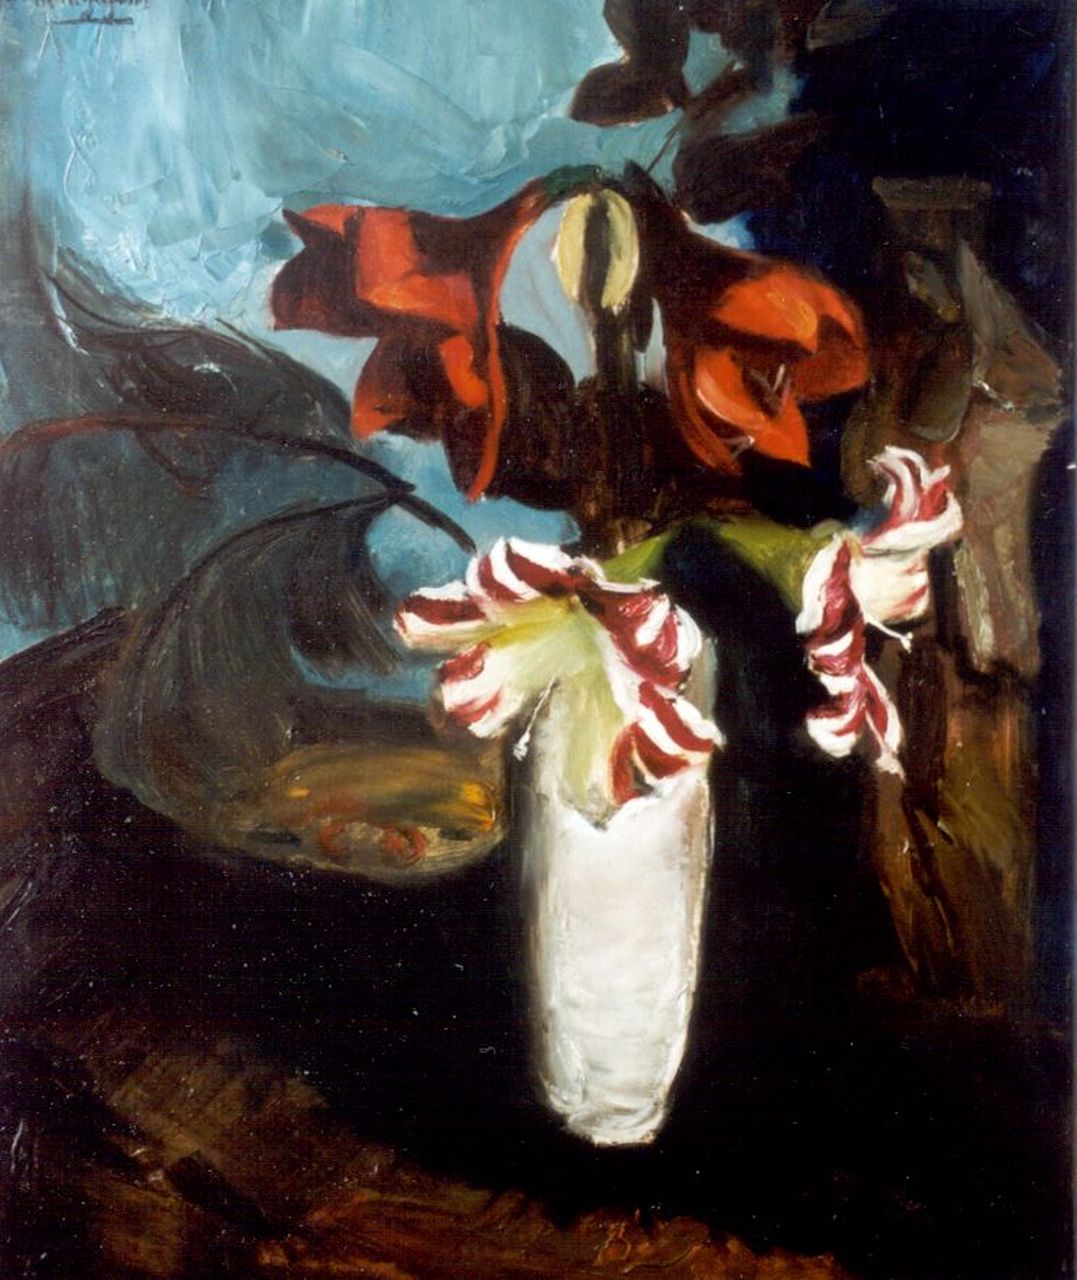 Wijngaerdt P.T. van | Petrus Theodorus 'Piet' van Wijngaerdt, Amaryllis in a white vase, Öl auf Leinwand 80,2 x 68,0 cm, signed u.l.